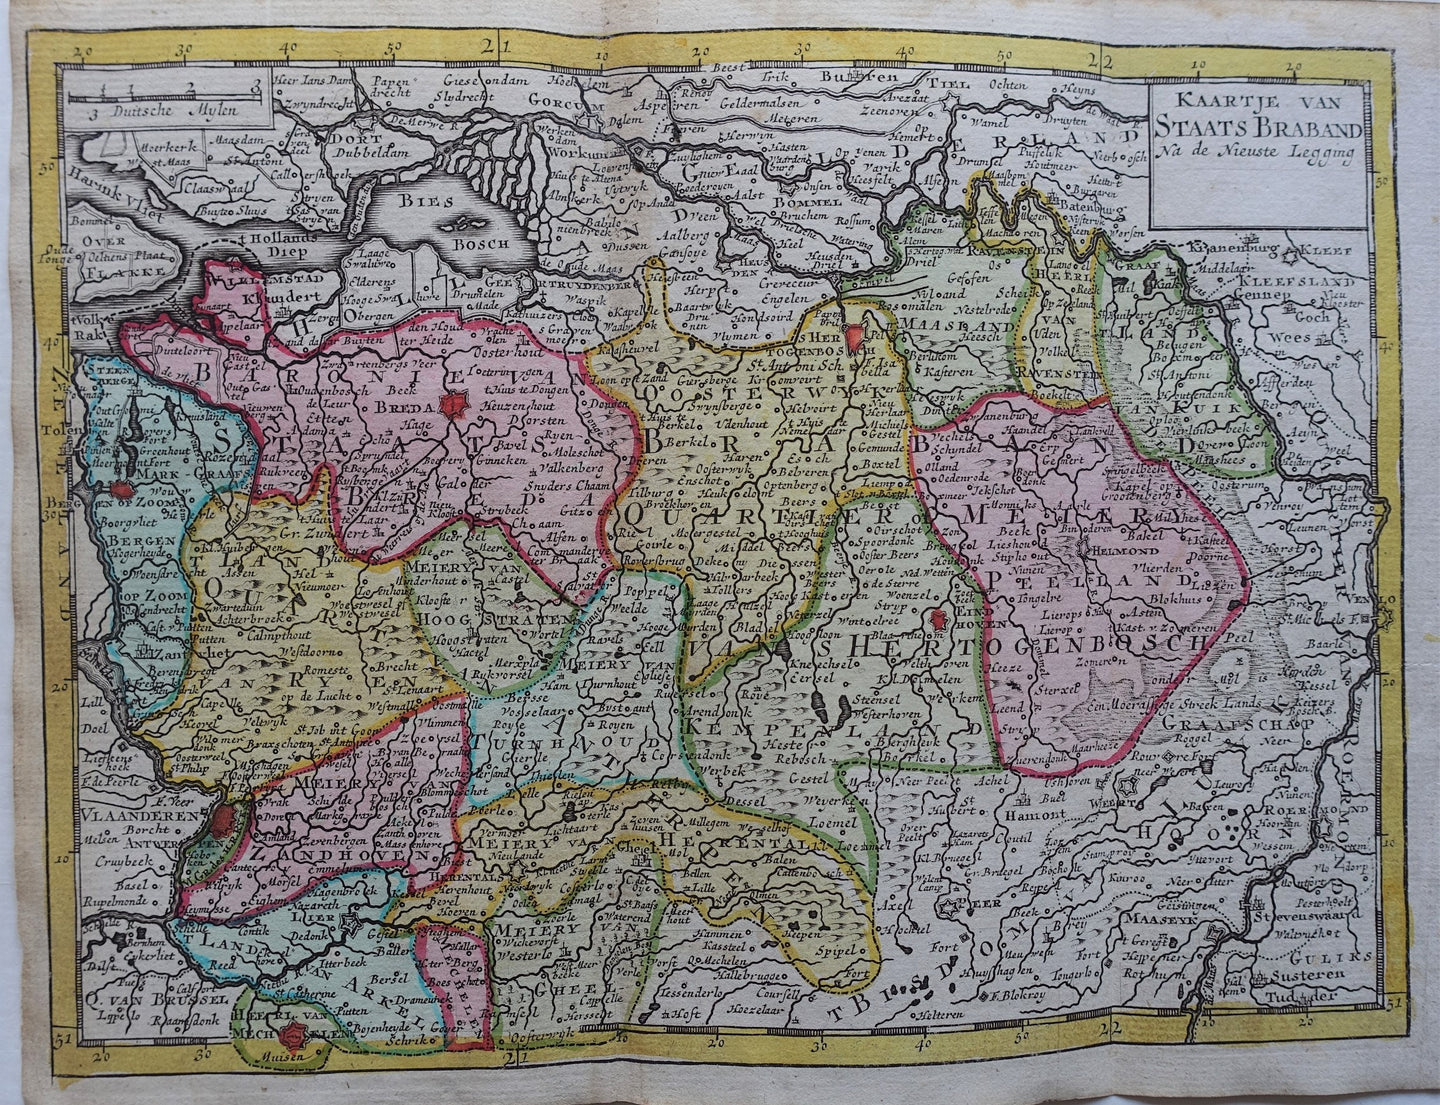 Brabant Noord-Brabant (Staats-Brabant) - JB Elwe & DM Langeveld - 1786